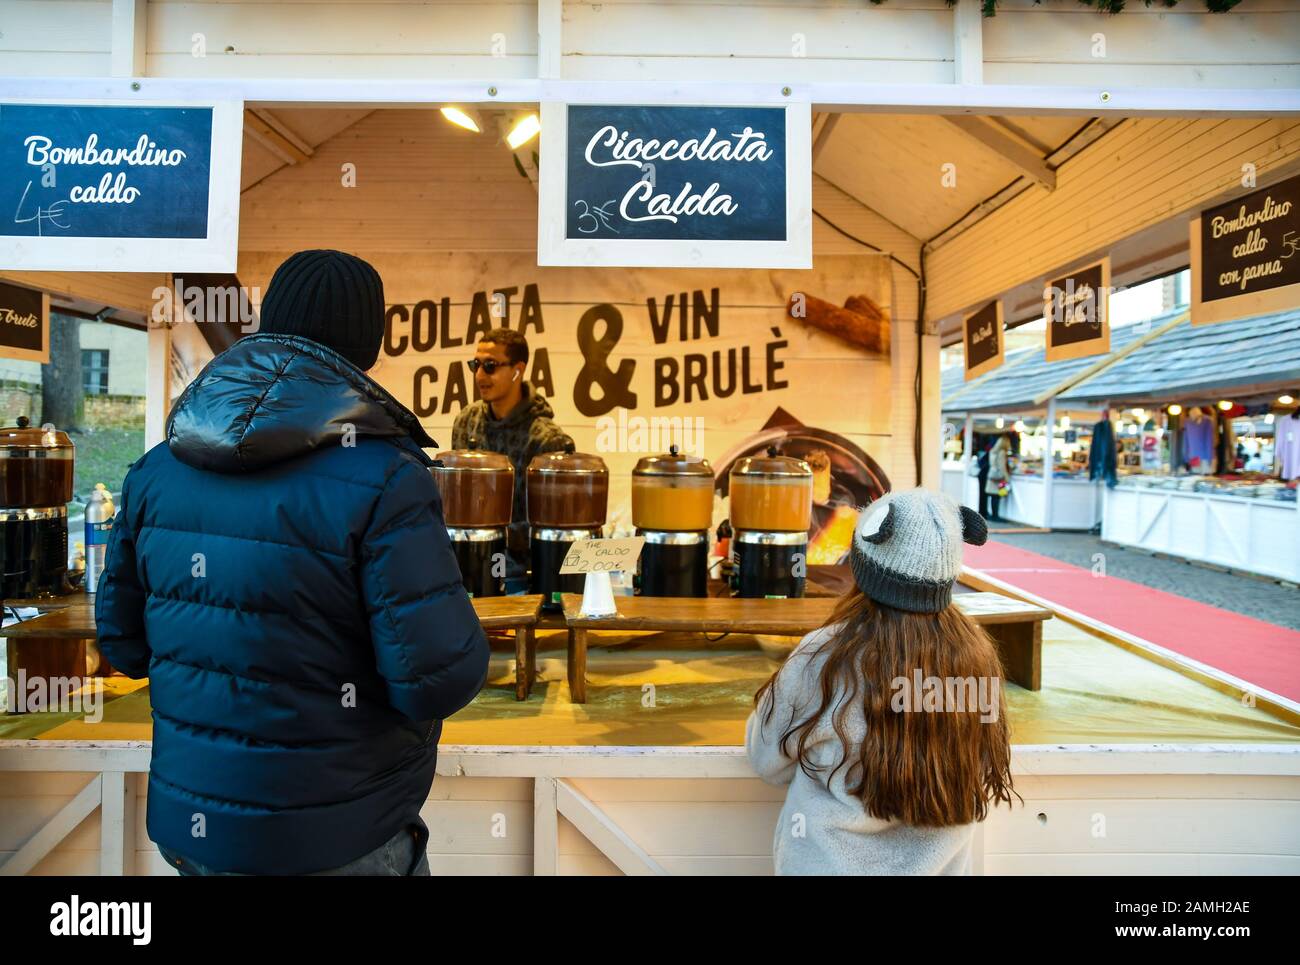 Vater und Tochter kaufen heiße Schokolade und Glühwein in einem Warmgetränkestall auf dem traditionellen Weihnachtsmarkt in Turin, Piemont, Italien Stockfoto